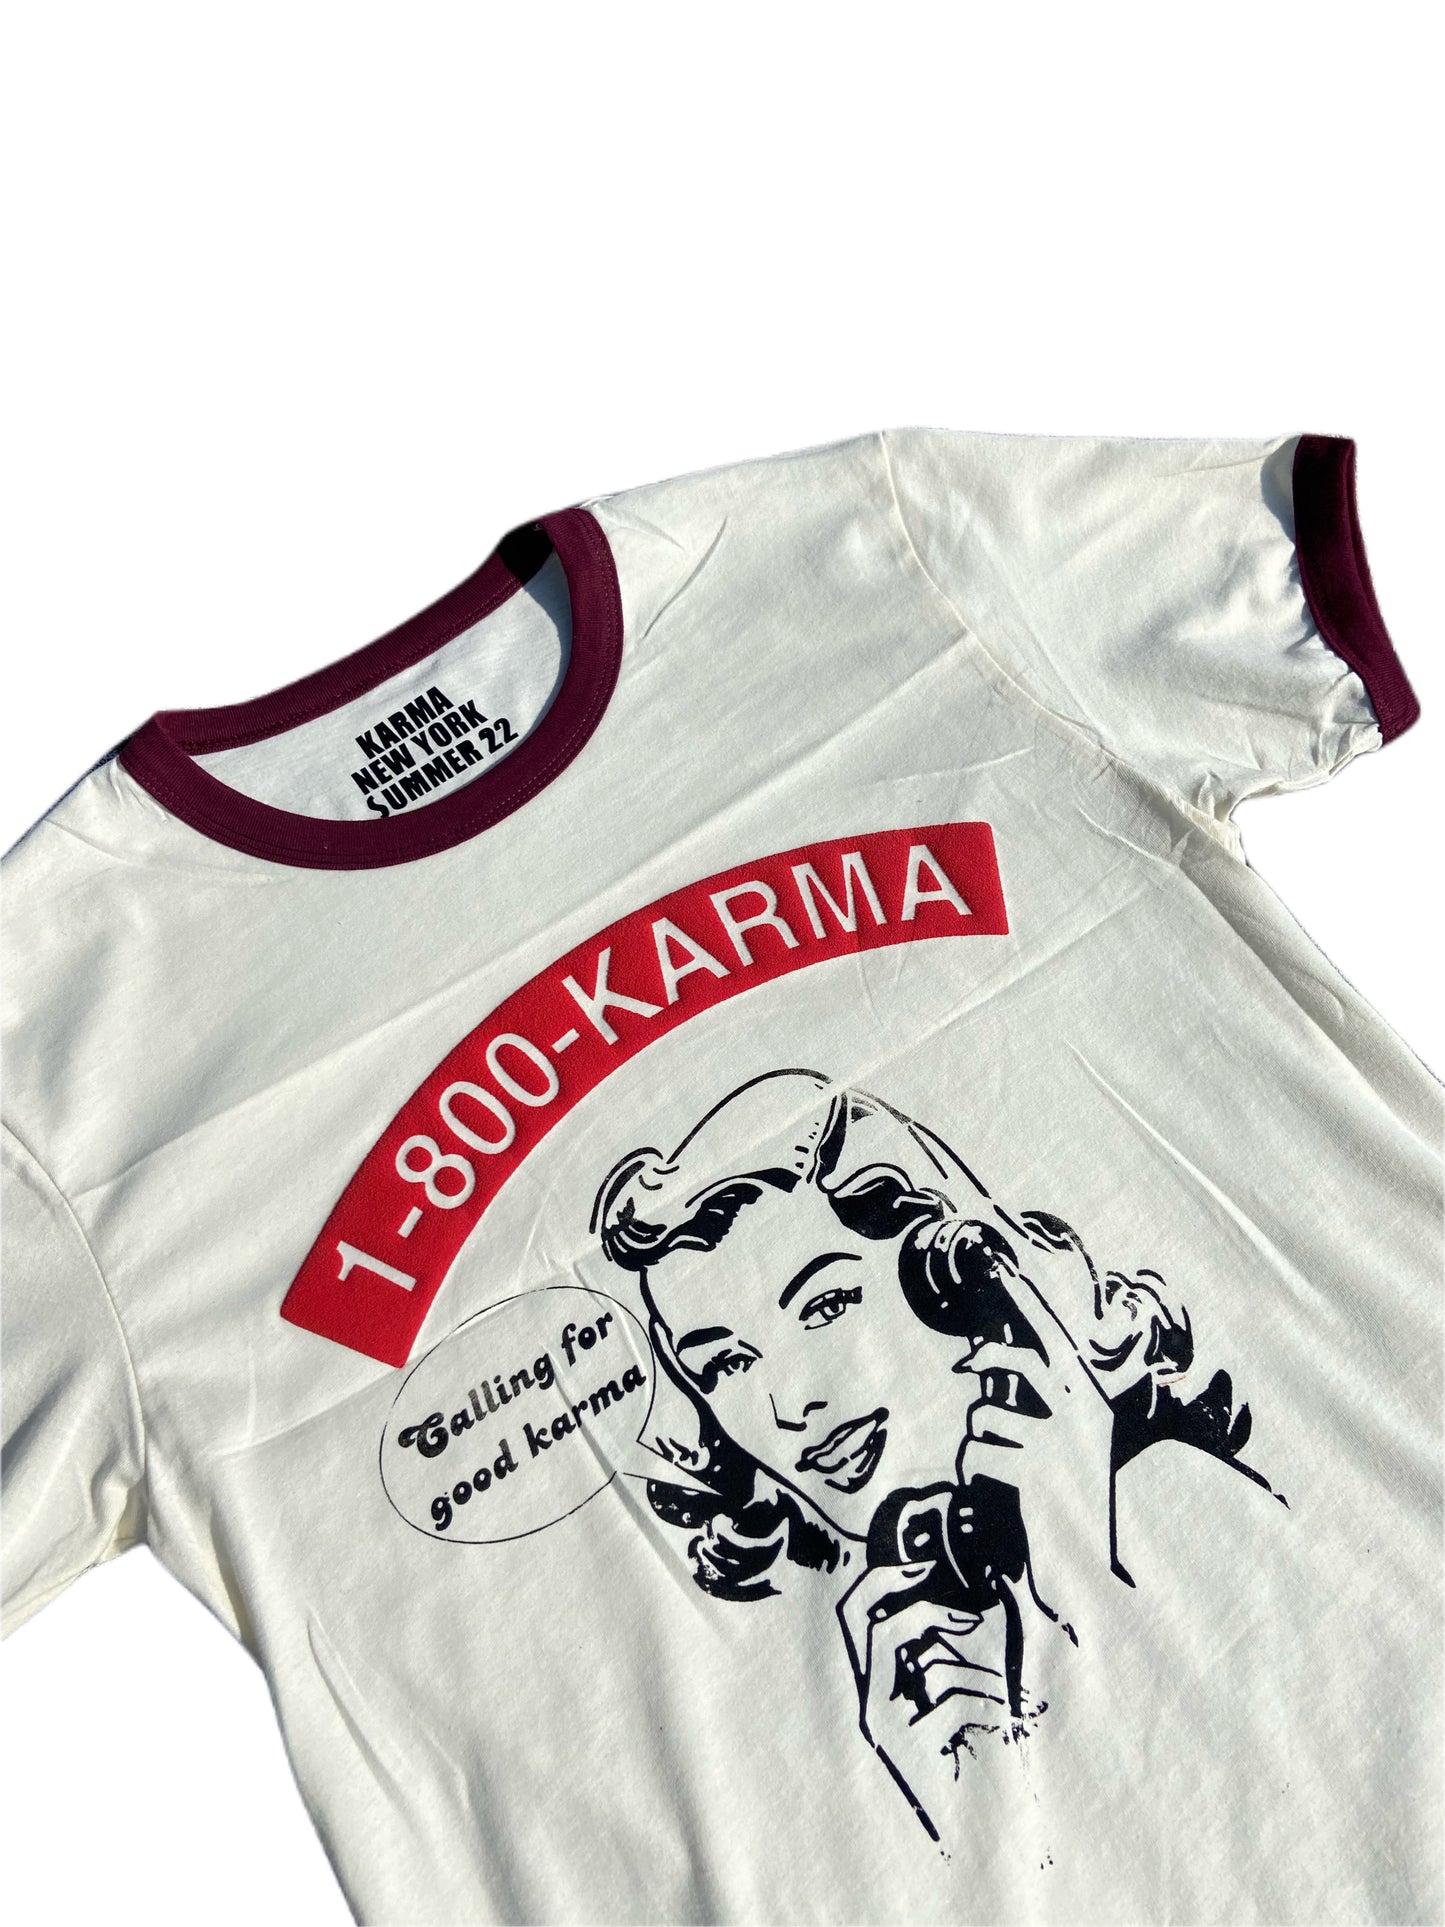 “Calling For Good Karma” Unisex Ringer Shirt